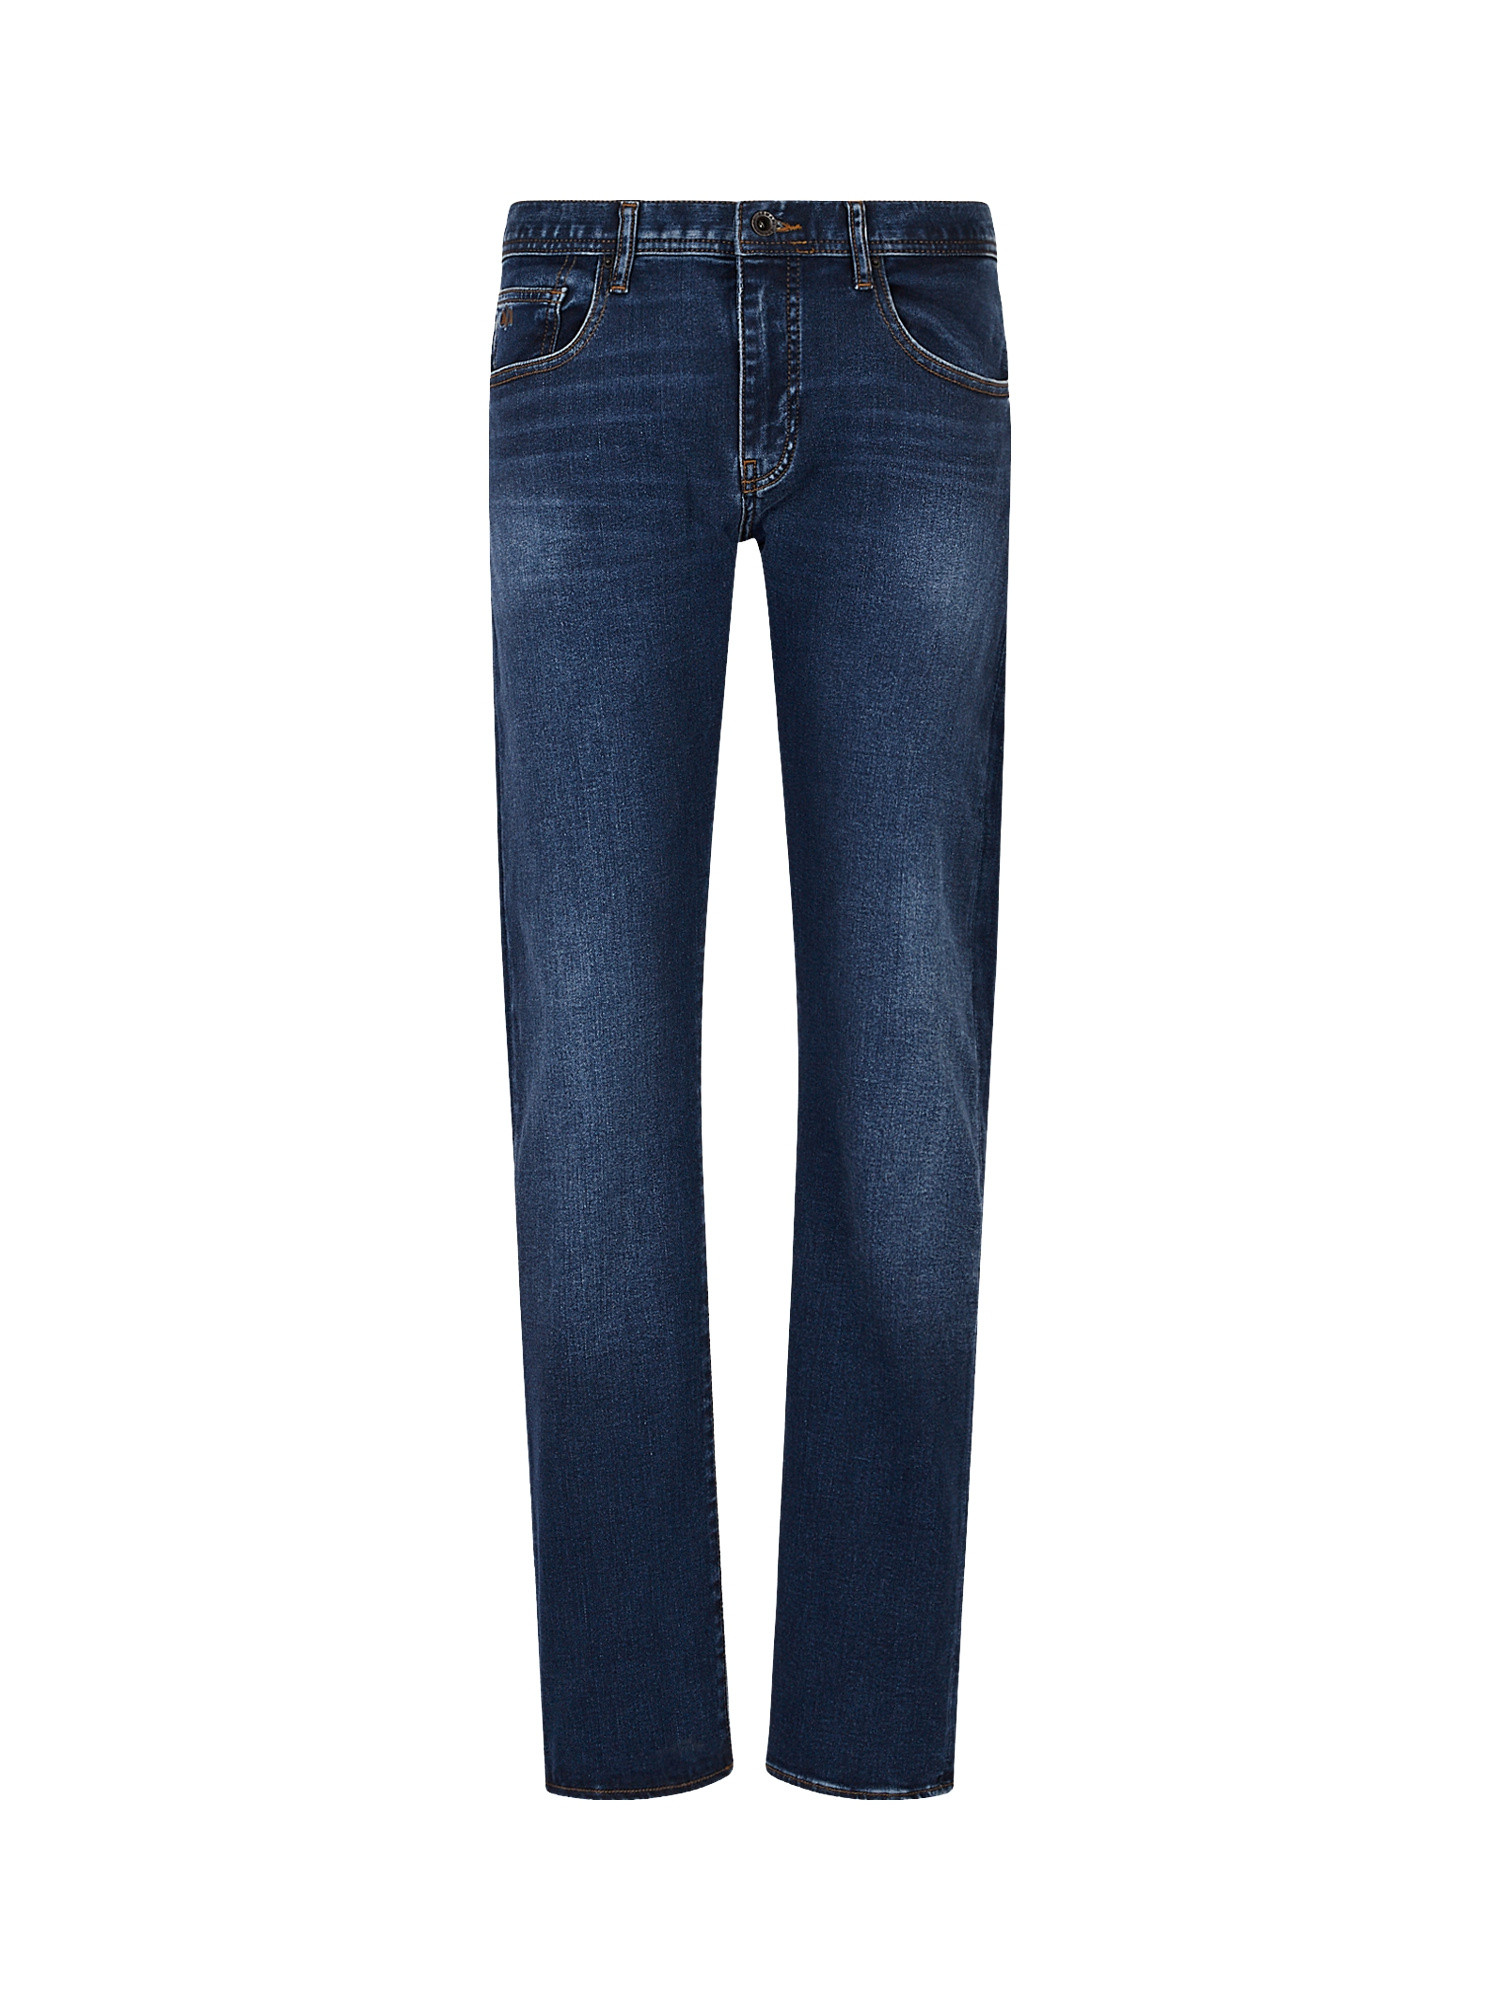 Armani Exchange - Five pocket slim fit jeans, Dark Blue, large image number 0